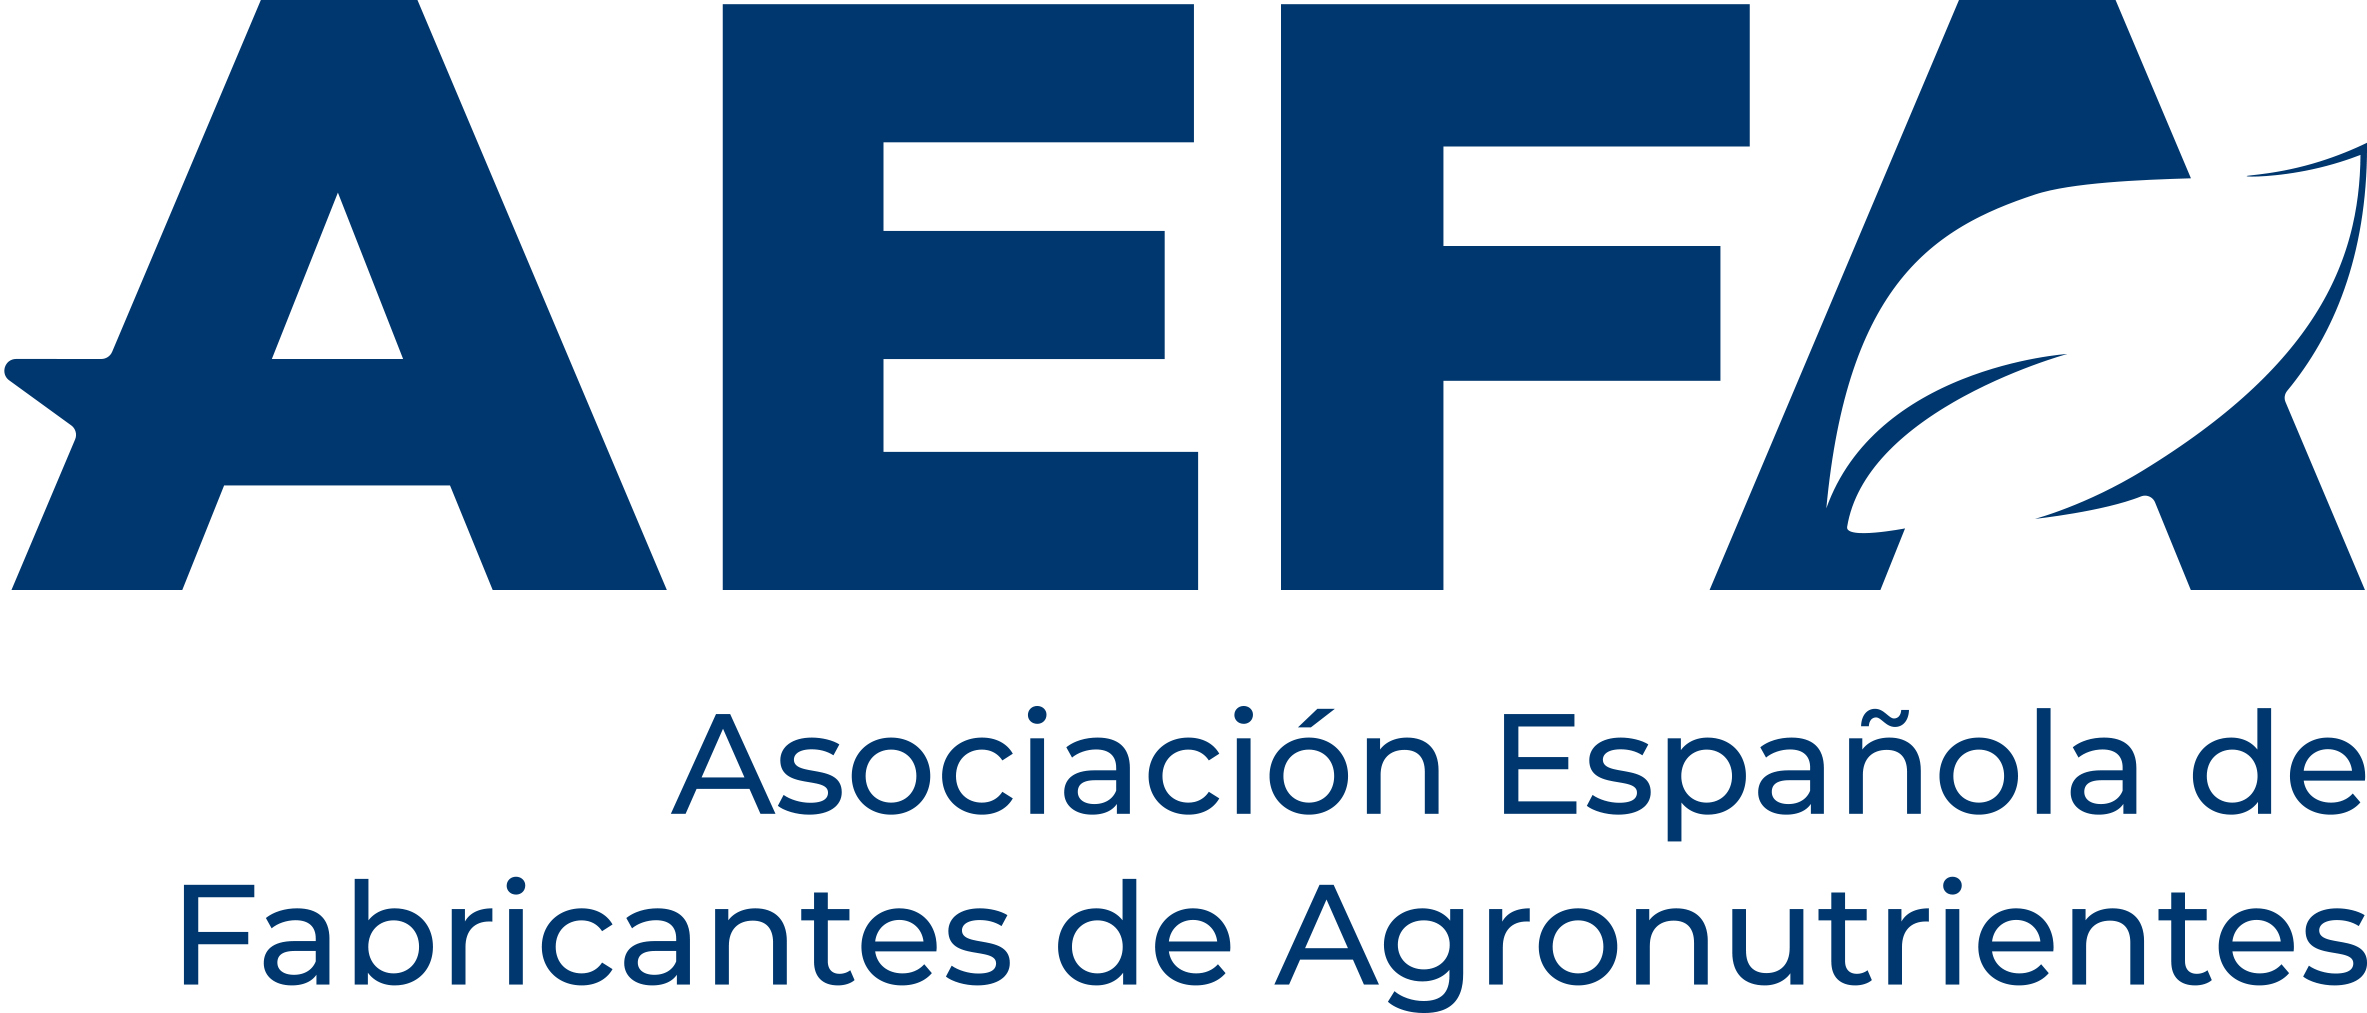 AEFA - Asociación Española de Fabricantes de Agronutrientes